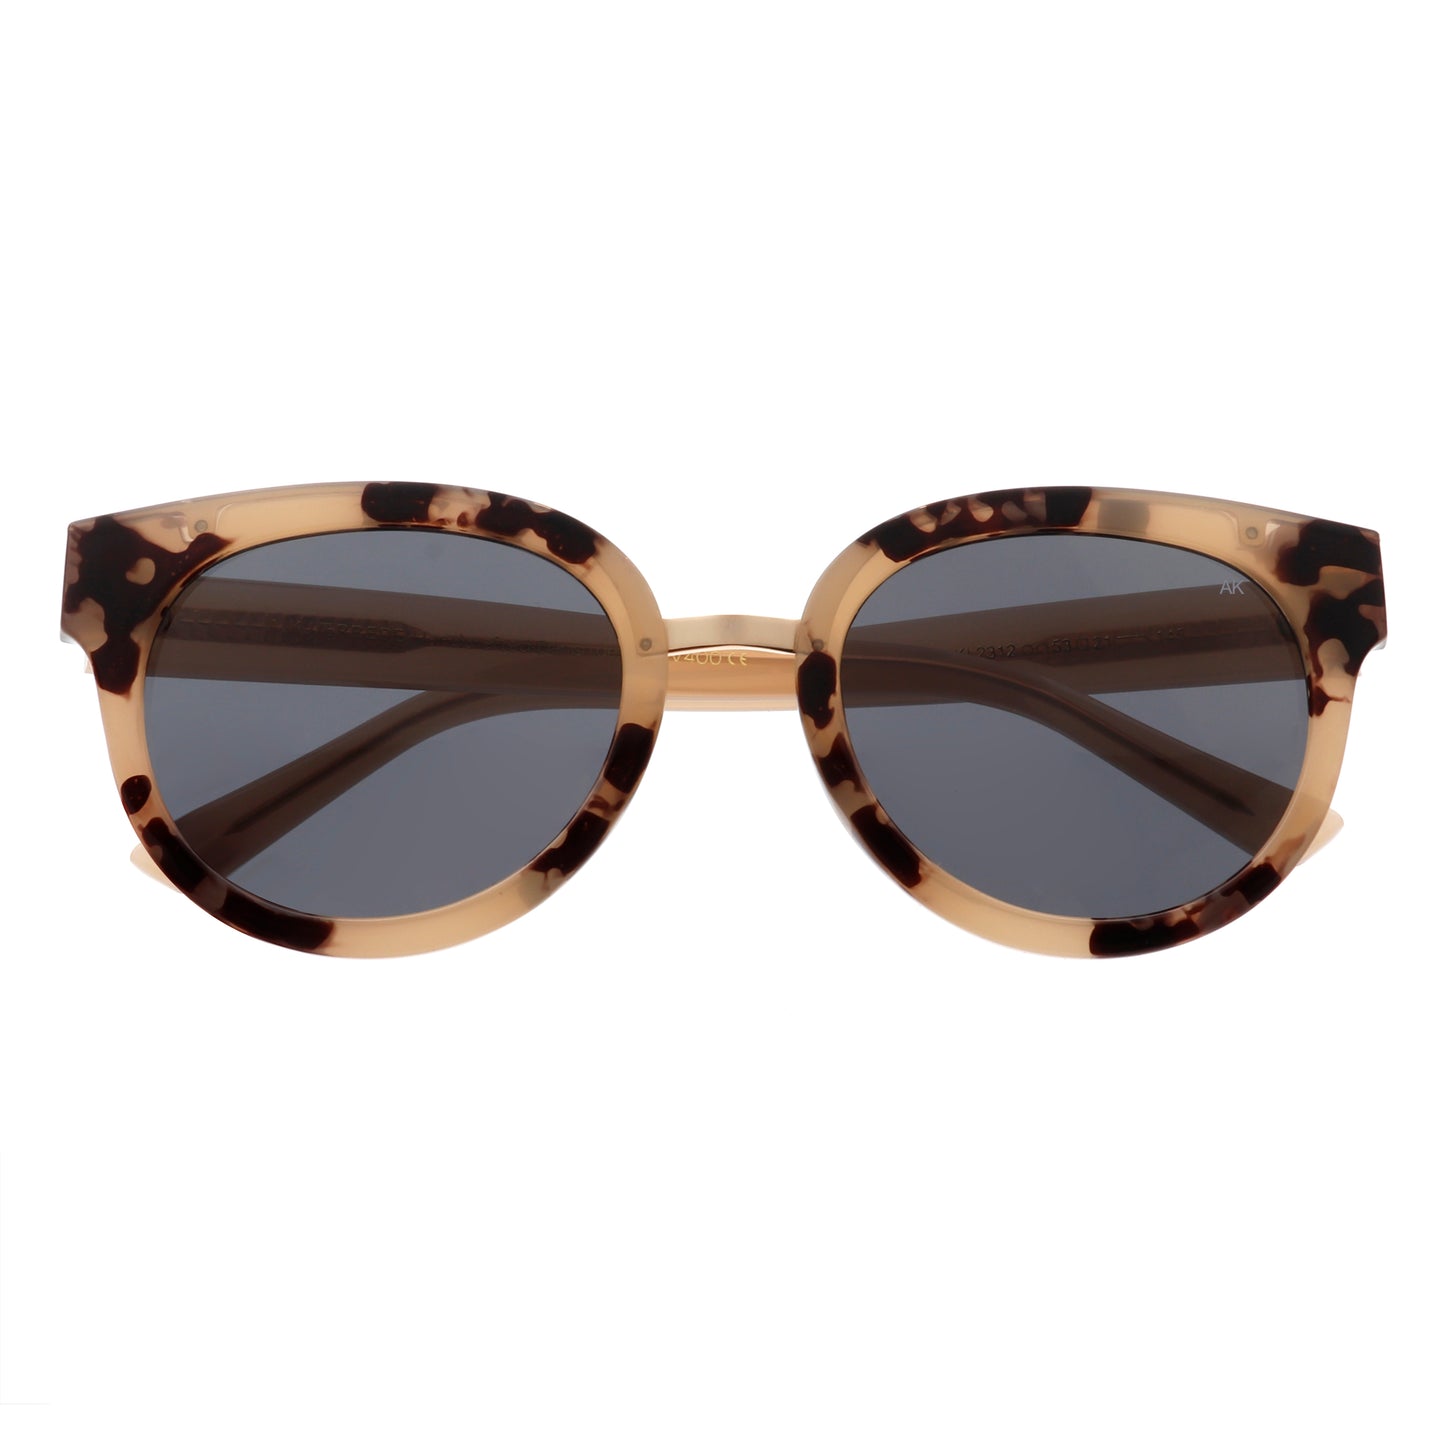 A.Kjaerbede Jolie Sunglasses in Hornet color